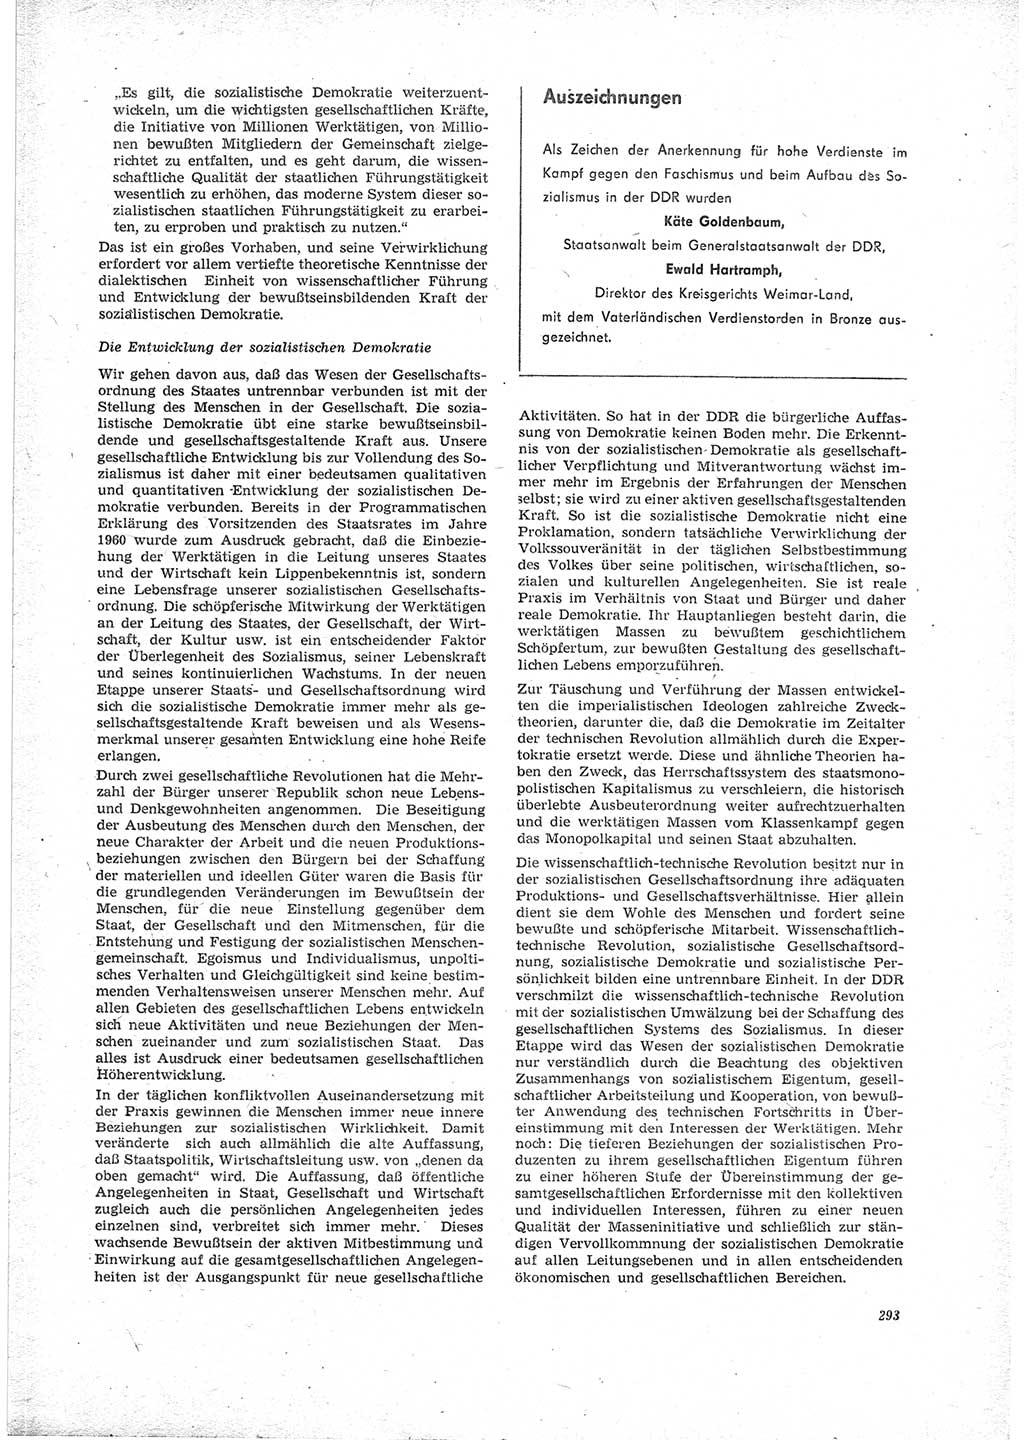 Neue Justiz (NJ), Zeitschrift für Recht und Rechtswissenschaft [Deutsche Demokratische Republik (DDR)], 23. Jahrgang 1969, Seite 293 (NJ DDR 1969, S. 293)